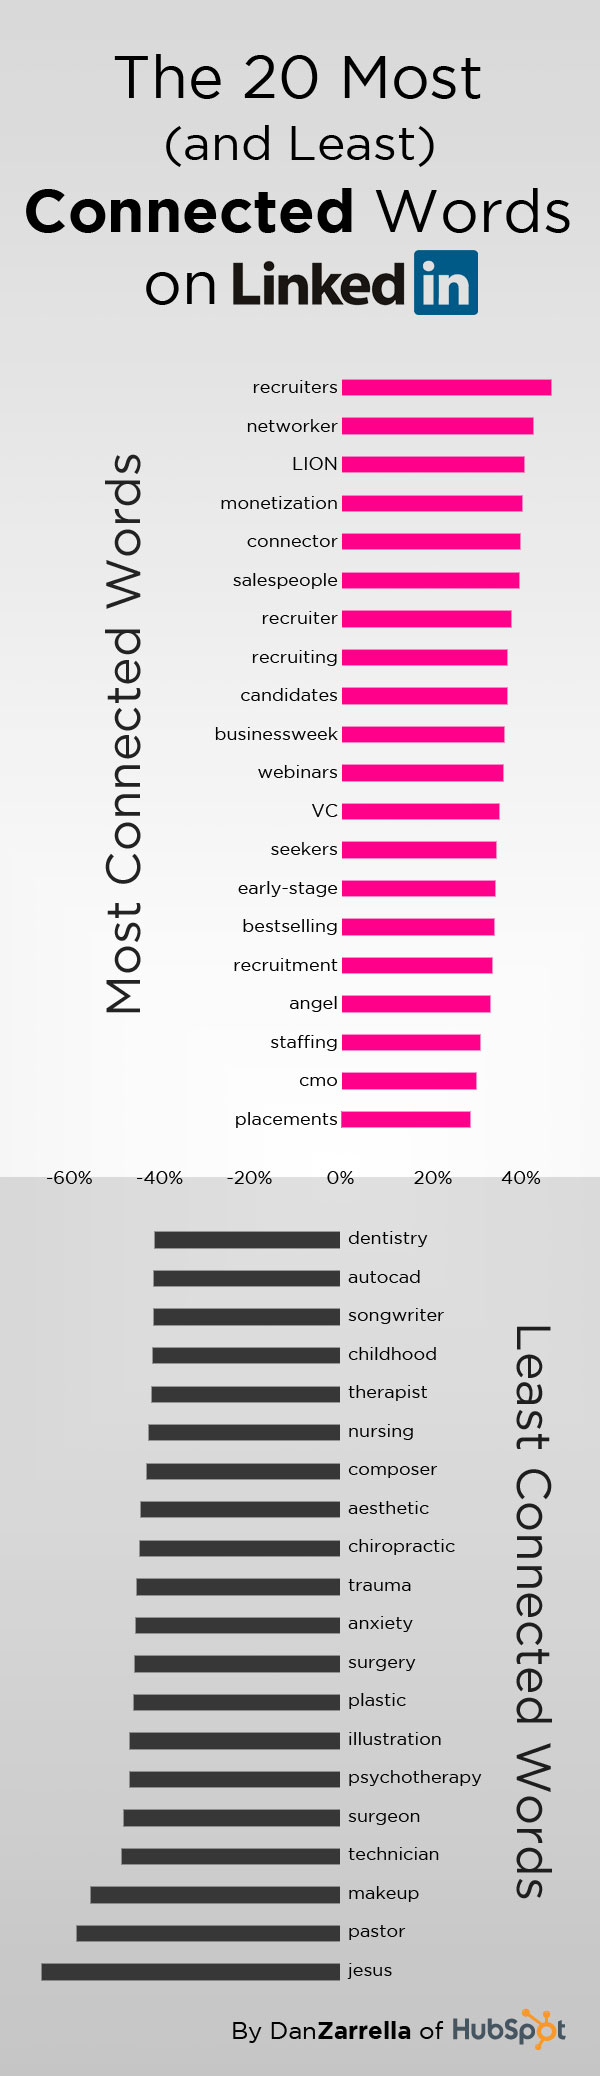 Las posiciones de trabajo más conectadas en LinkedIn 1